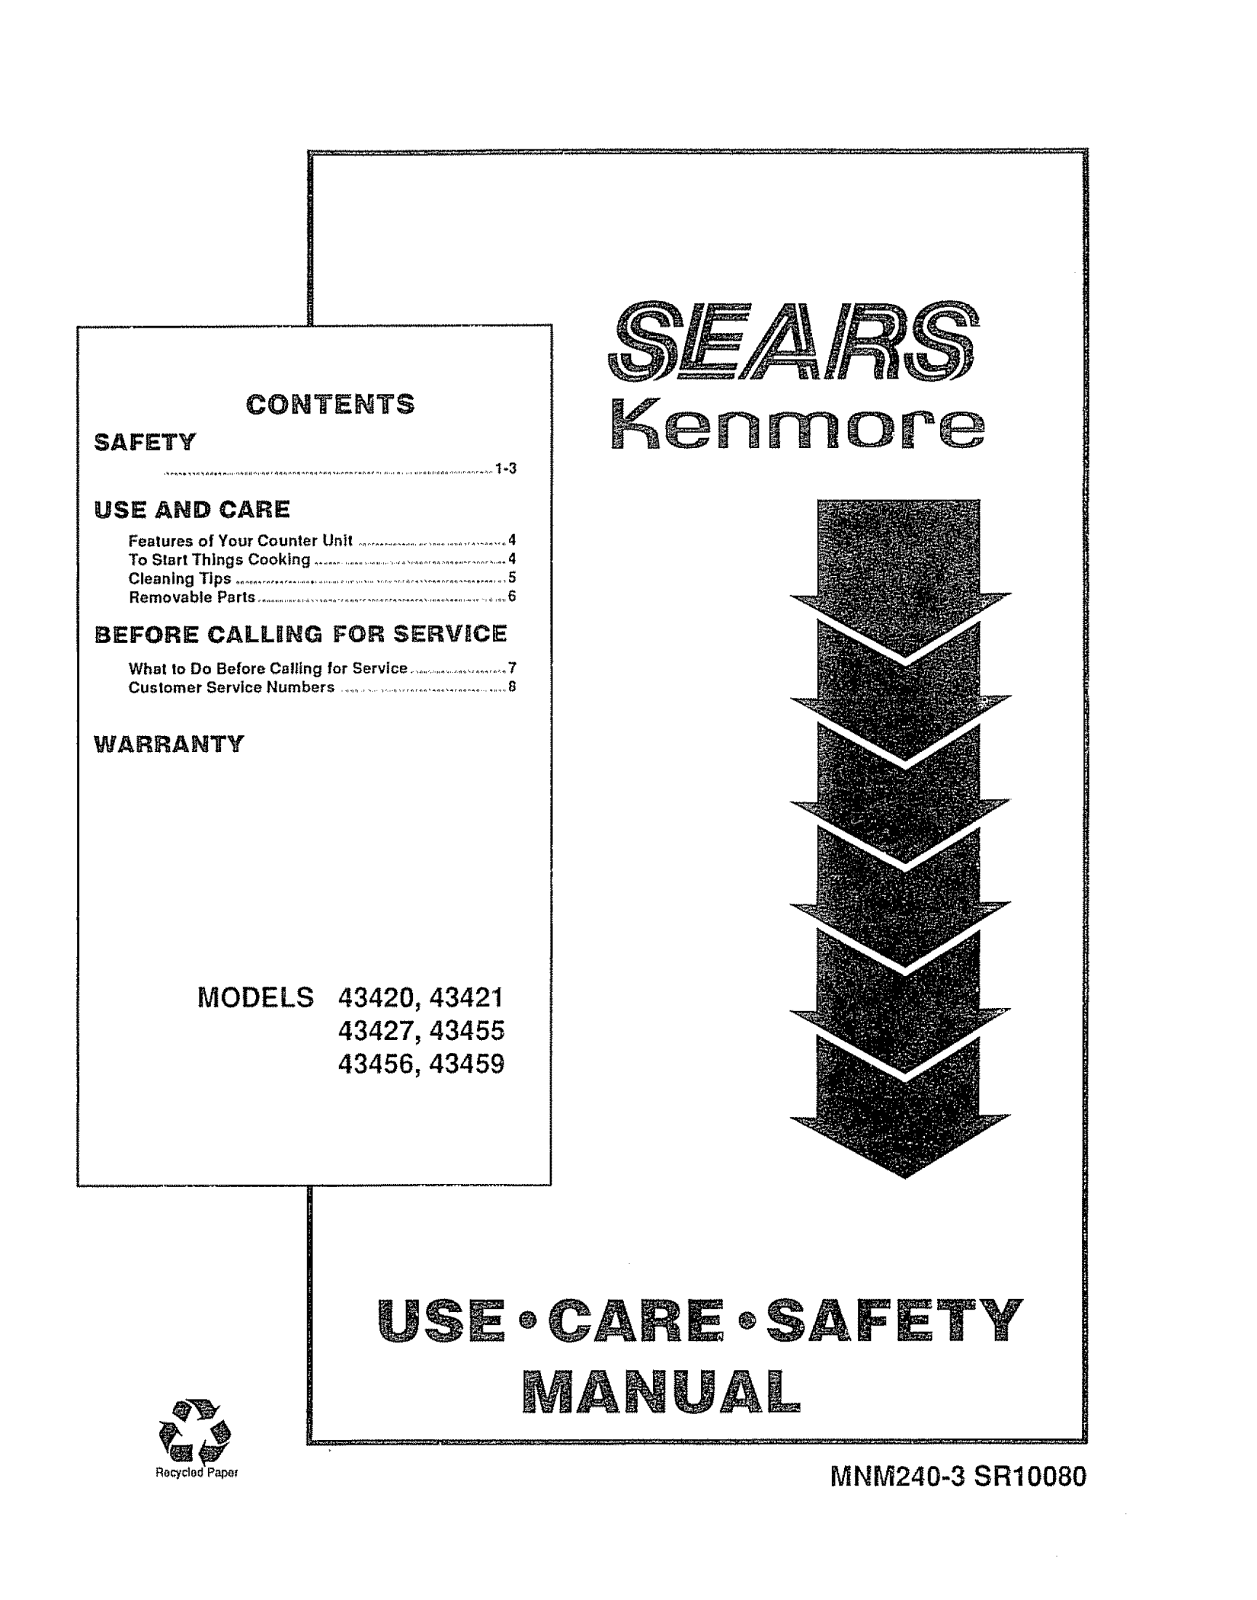 Kenmore 9114342090, 9114342190, 91143455590, 91143456590, 91143459590 Owner’s Manual